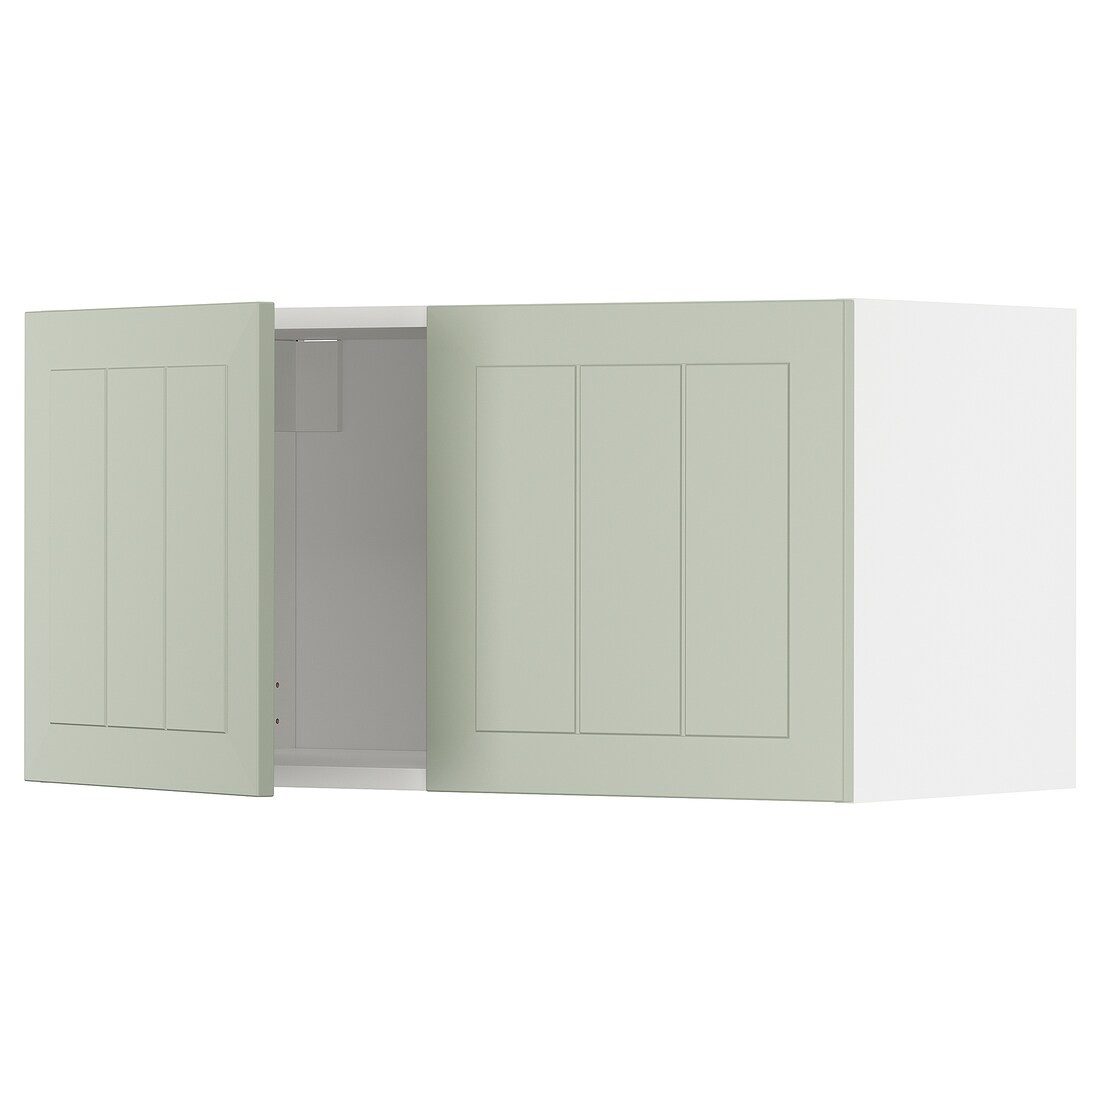 METOD МЕТОД Навесной шкаф с 2 дверями, белый / Stensund светло-зеленый, 80x40 см